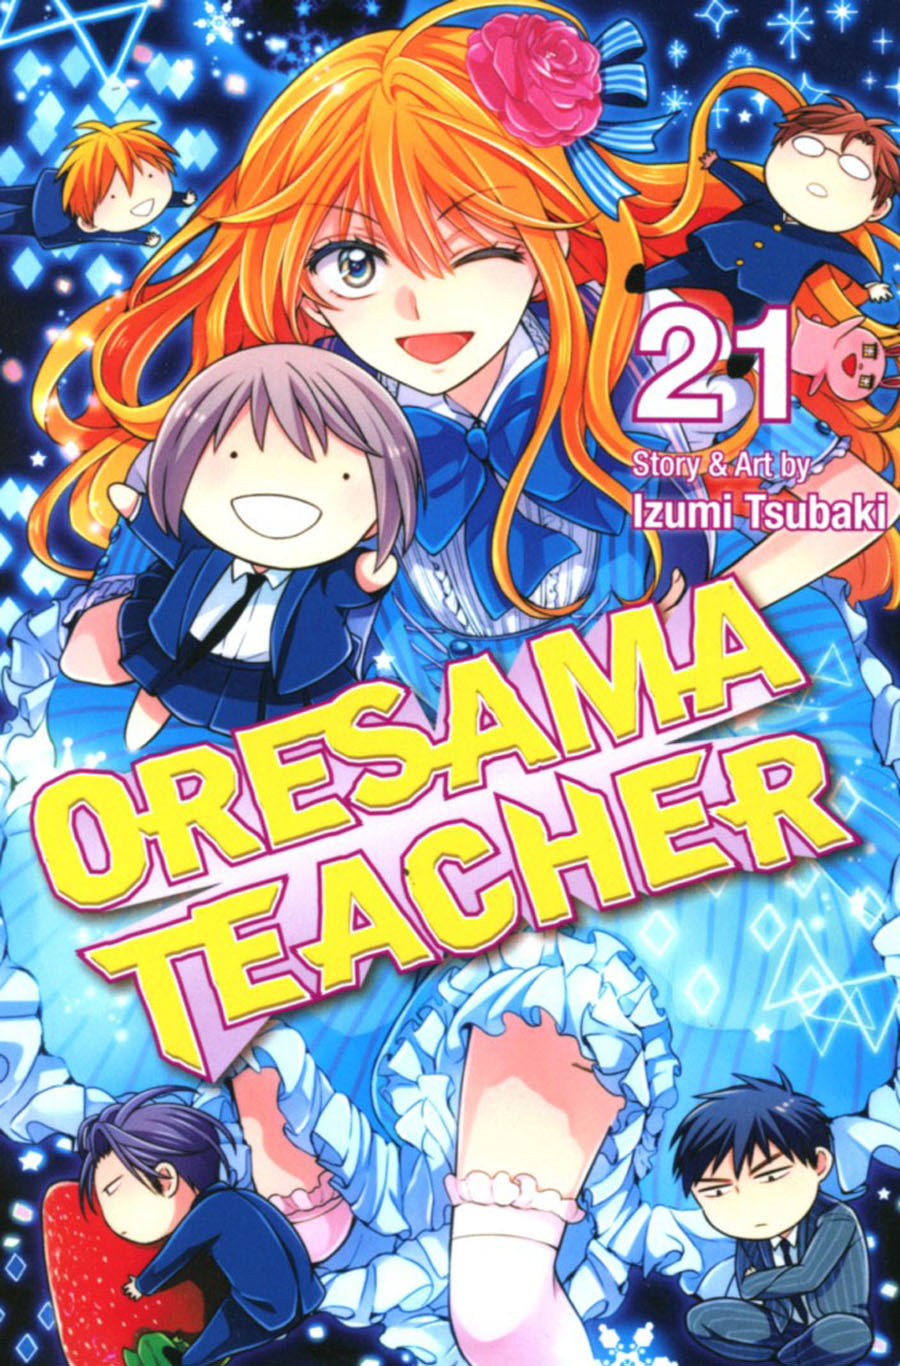 Oresama Teacher Vol 21 GN